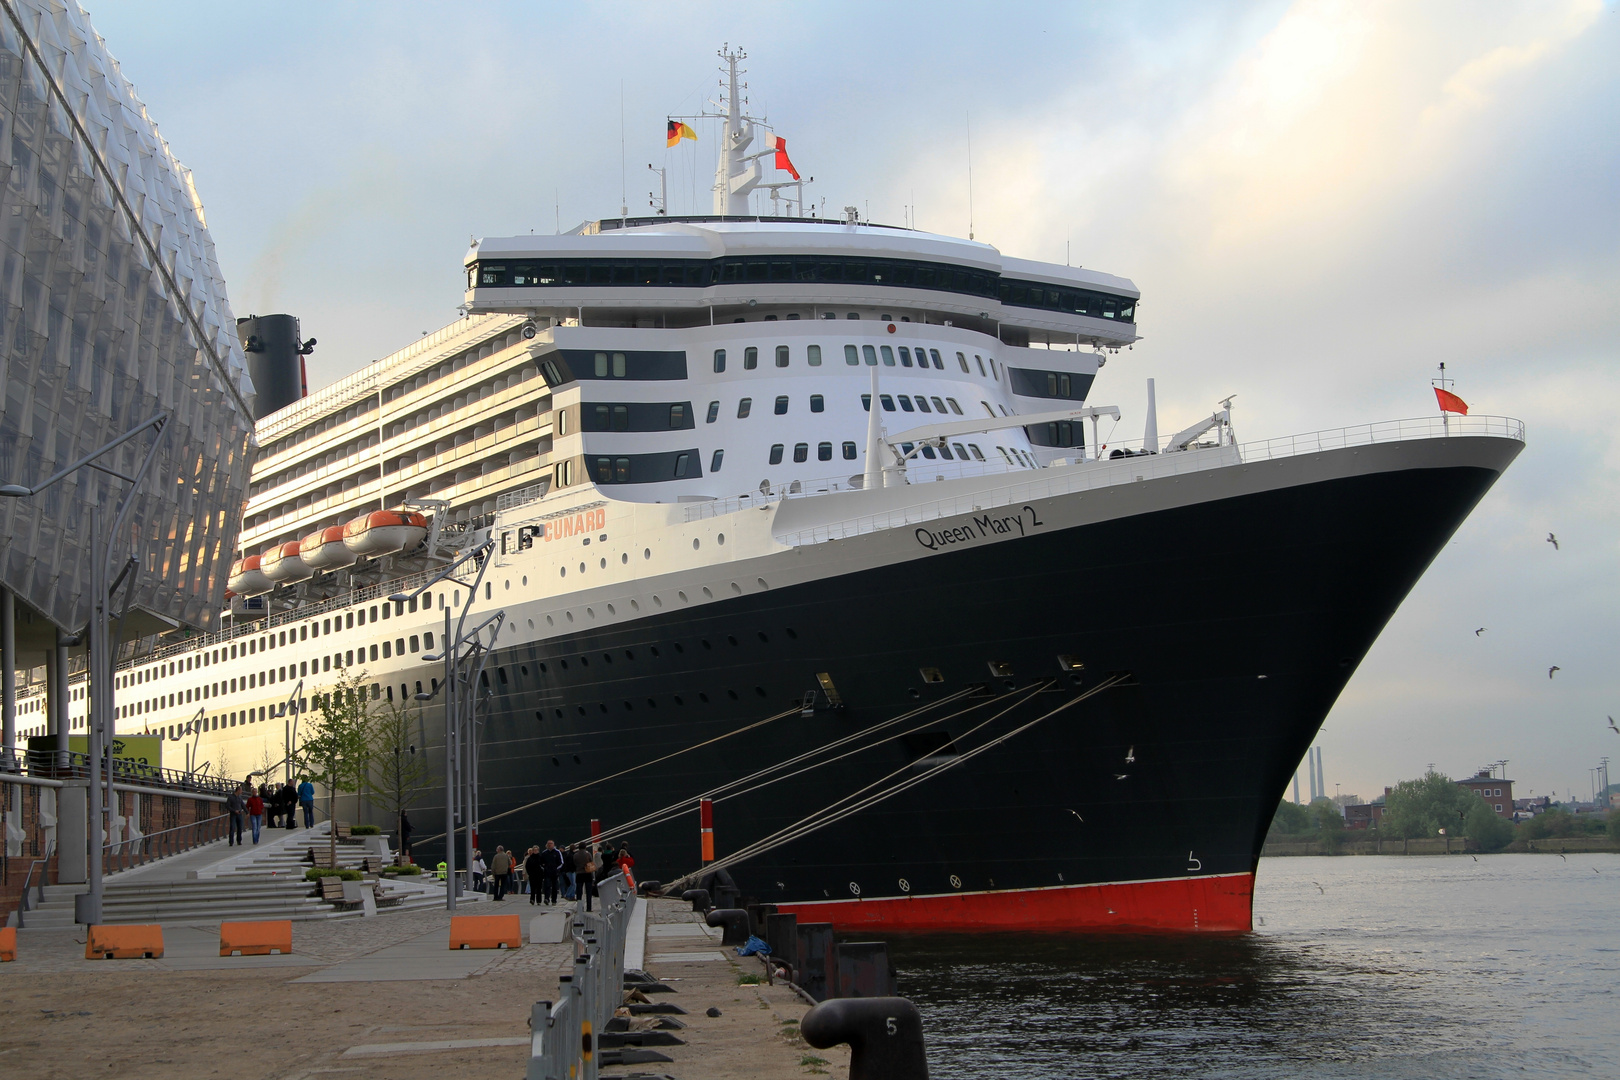 Queen Mary 2 in Hamburg